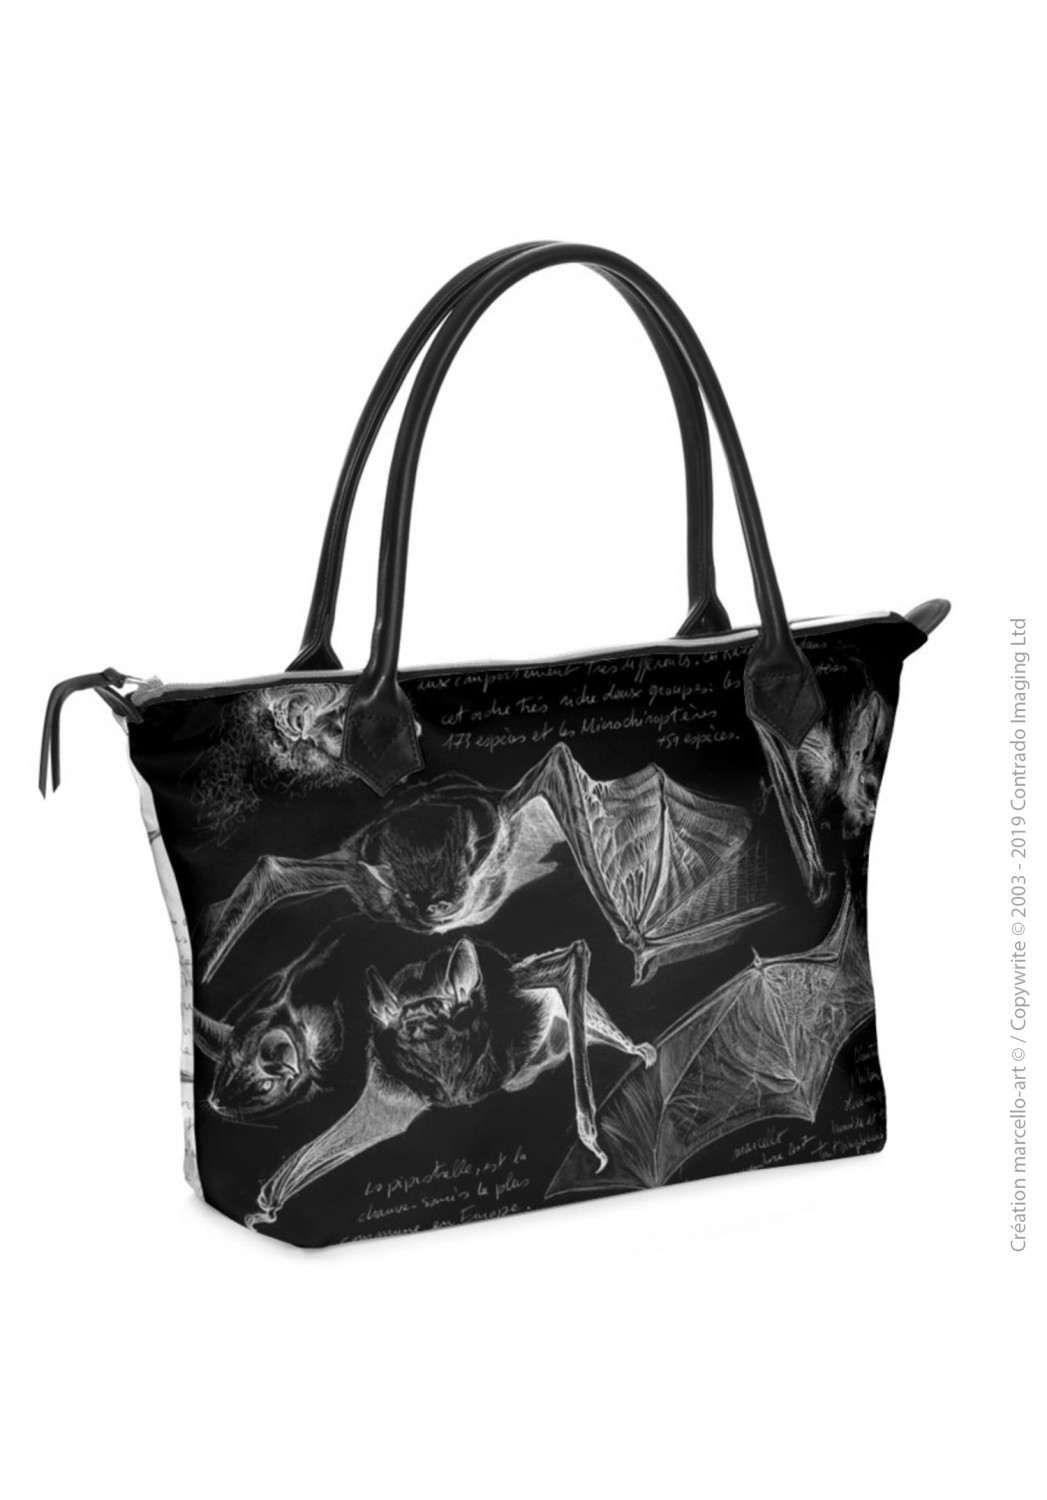 Marcello-art: Fashion accessory Zipped bag 31 pipistrelle